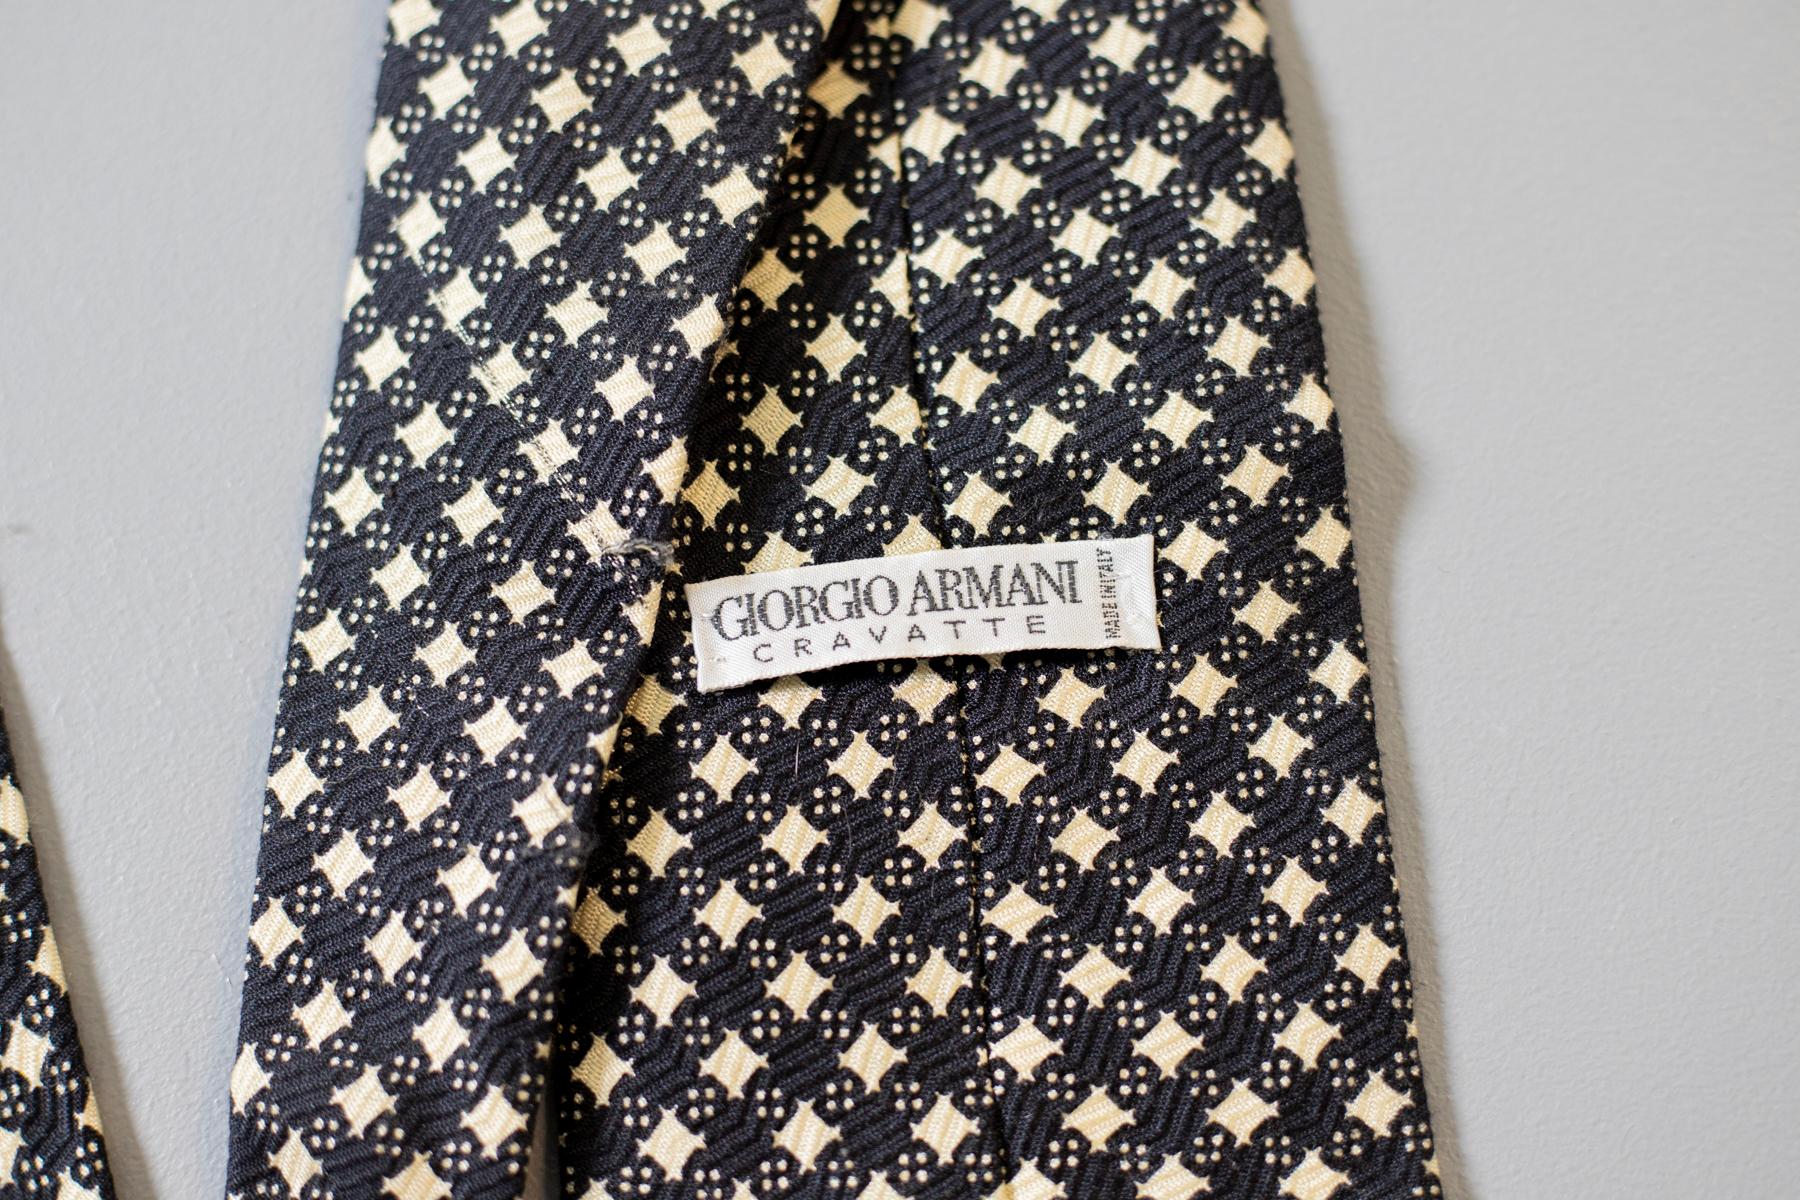 Classique, mais unique, cette cravate vintage tout en soie de Giorgio Armani est le bon choix pour une soirée formelle. A carreaux noirs et blancs et portant l'étiquette Giorgio Armani, cet accessoire vintage se marie parfaitement avec une chemise